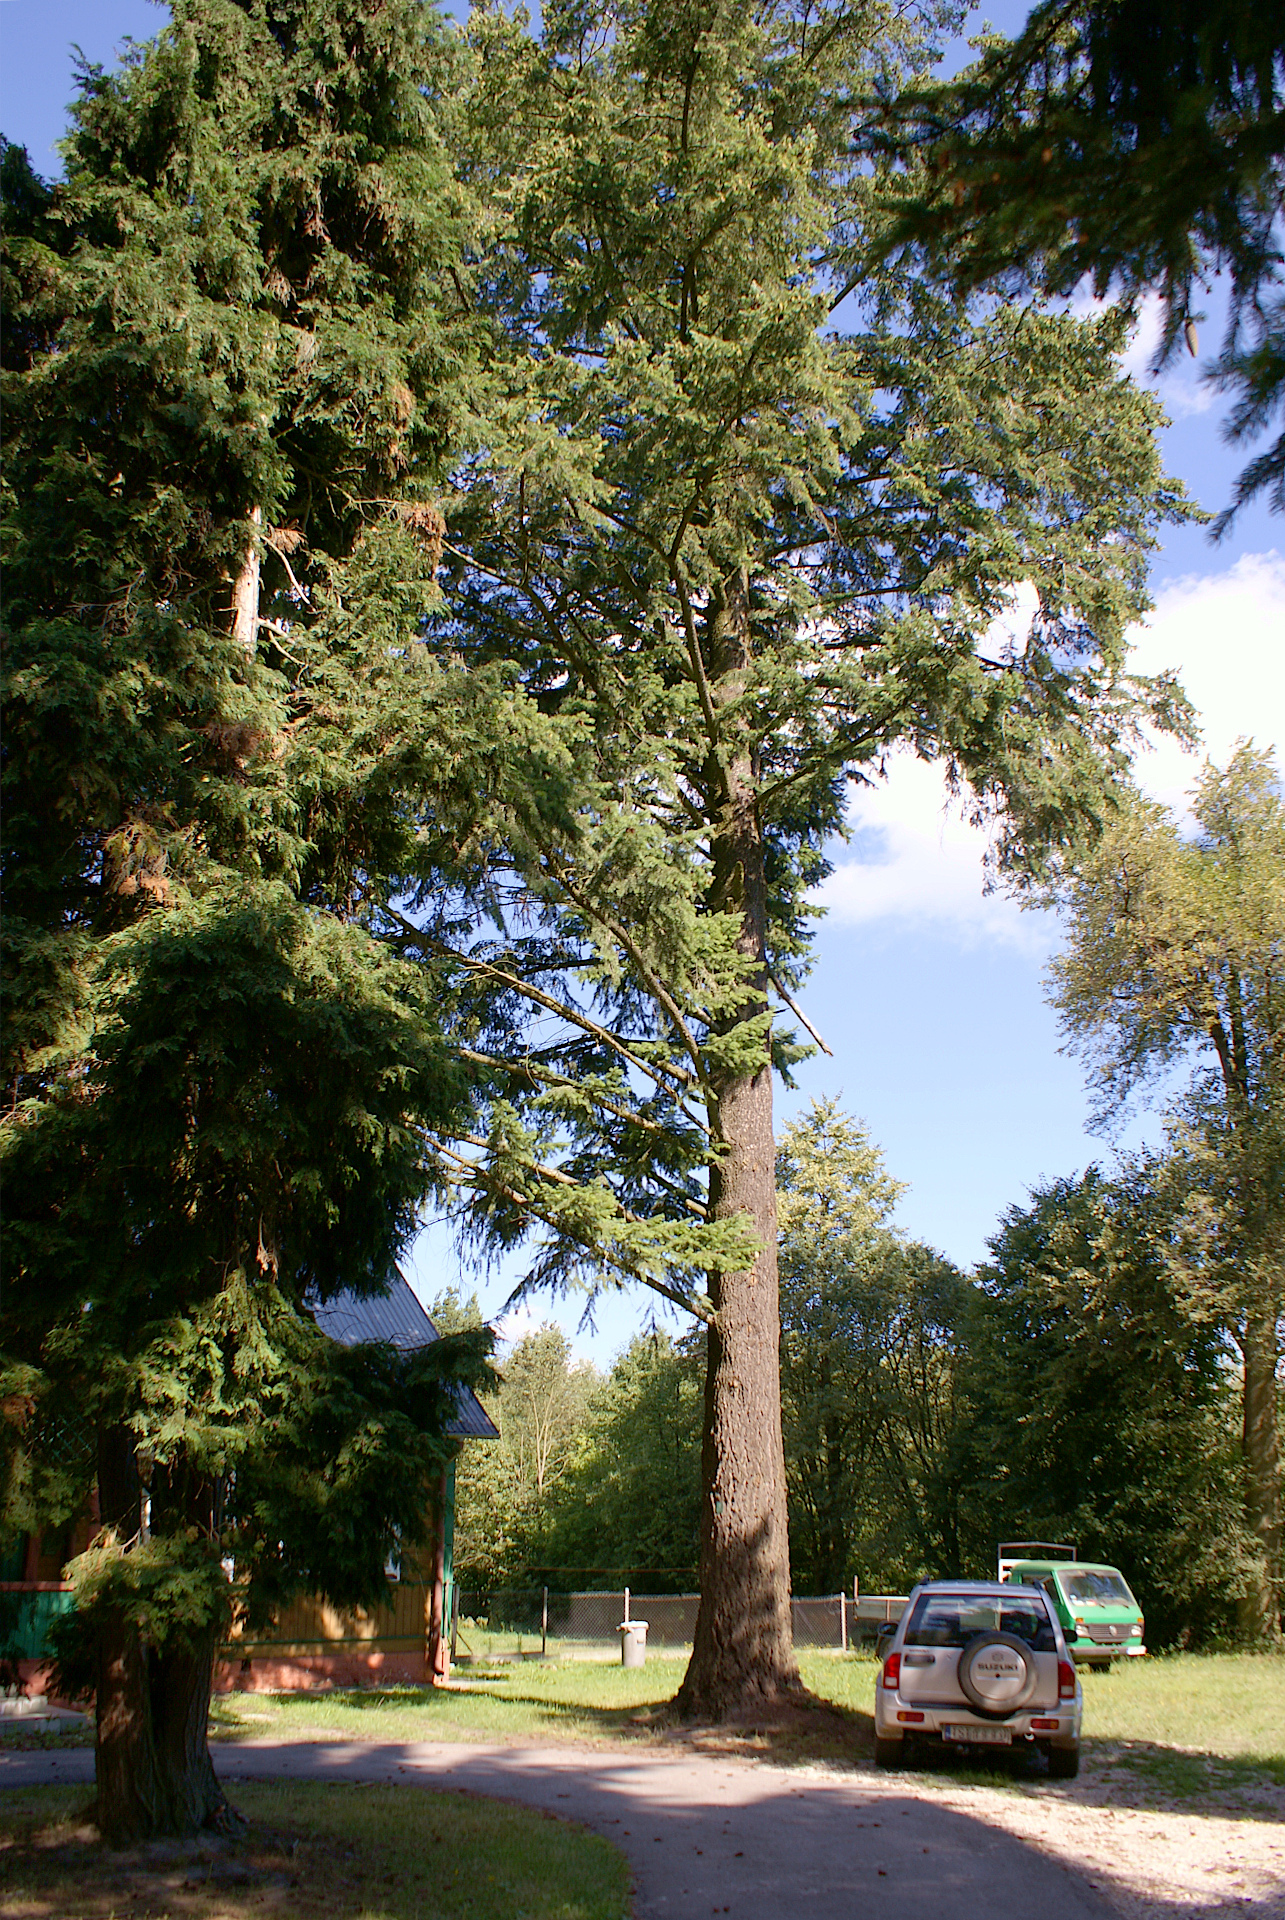 Daglezja zielona (jedlica Douglasa,  pseudotsuga menziesii) stanowi jedno z największych drzew pozostałych po parku dworskim w Gębicach. Obwód: 311cm, wysokosc: 27m. Rośnie przy siedzibie Lesnictwa Godów.